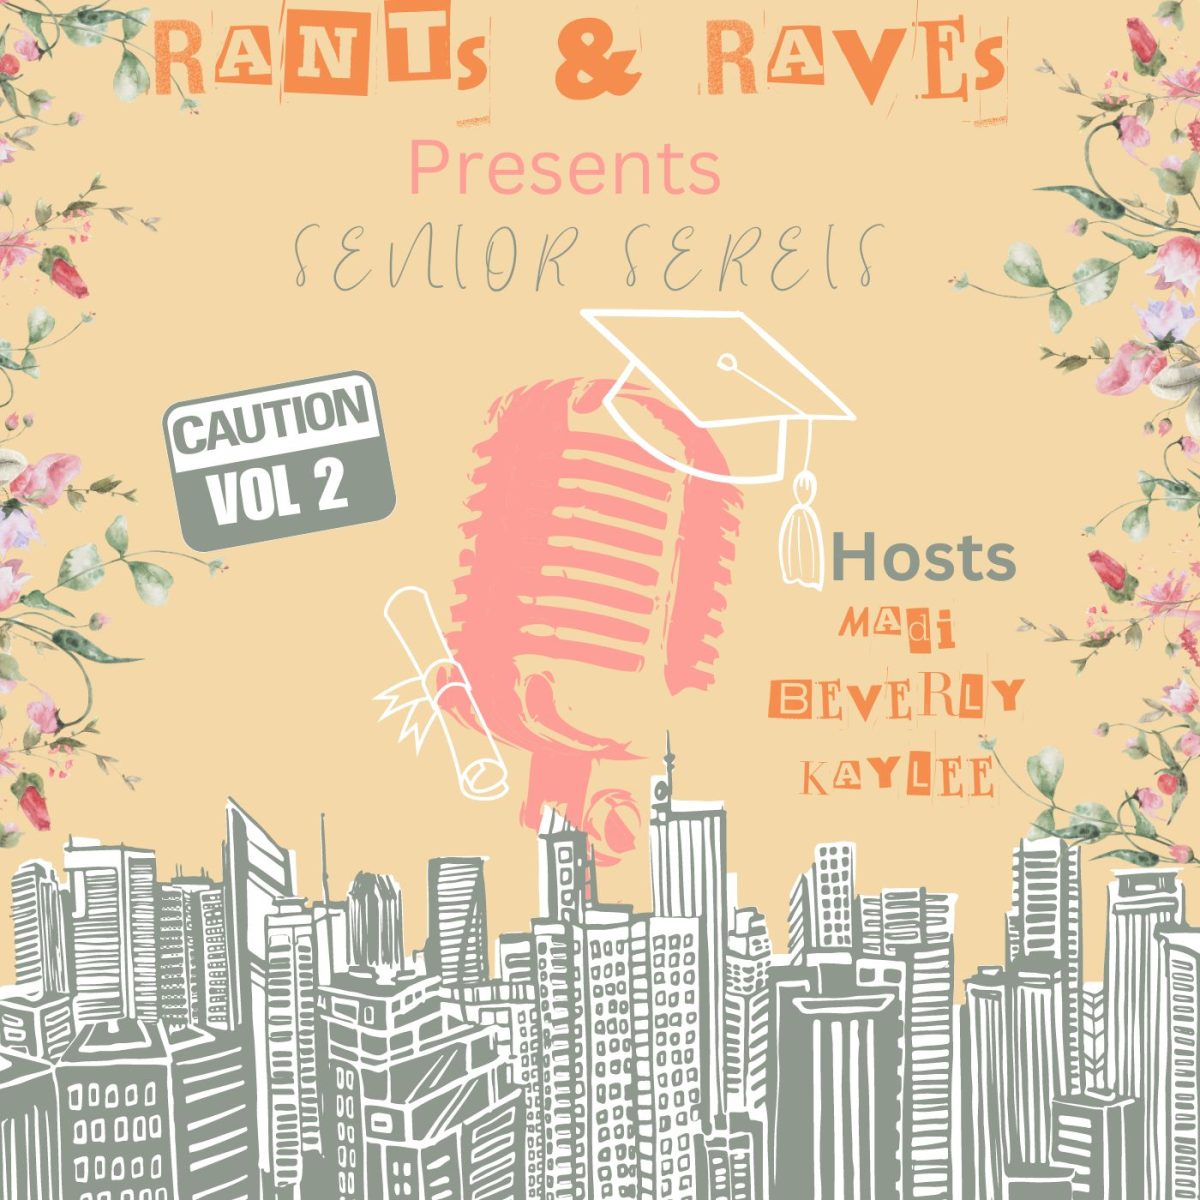 Rants & Raves presents: Senior series with Jayden Khambanoun